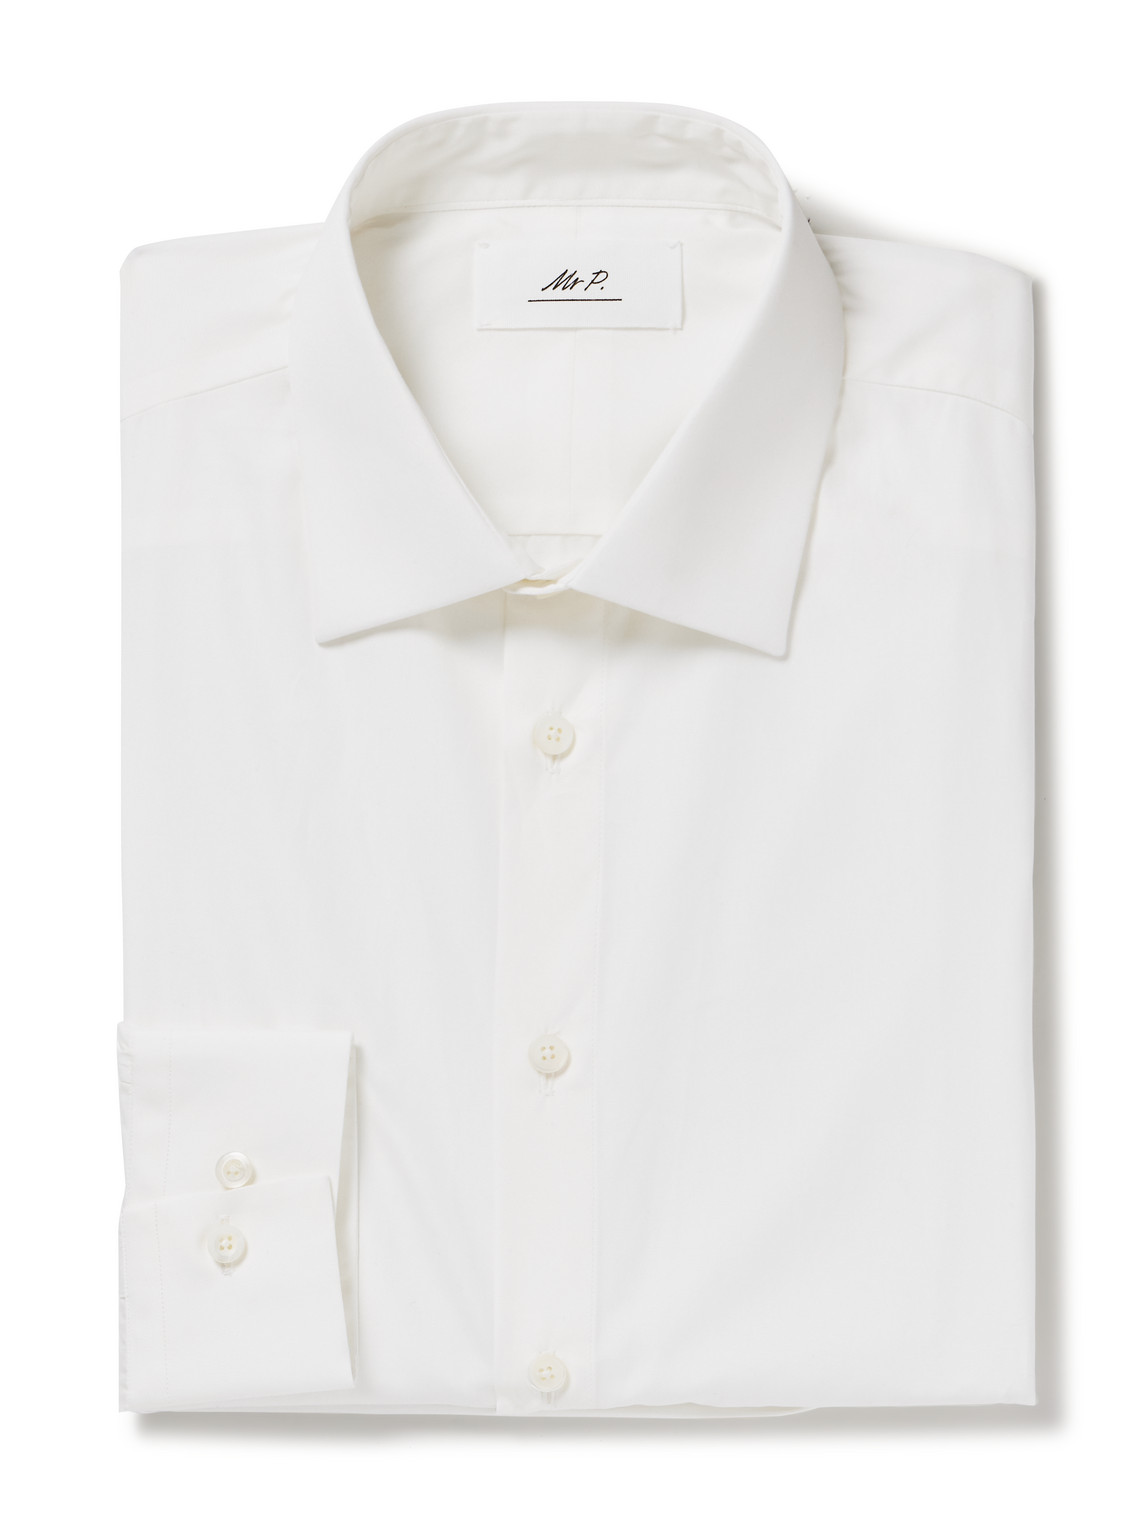 Mr P. Super 120s Cotton Shirt